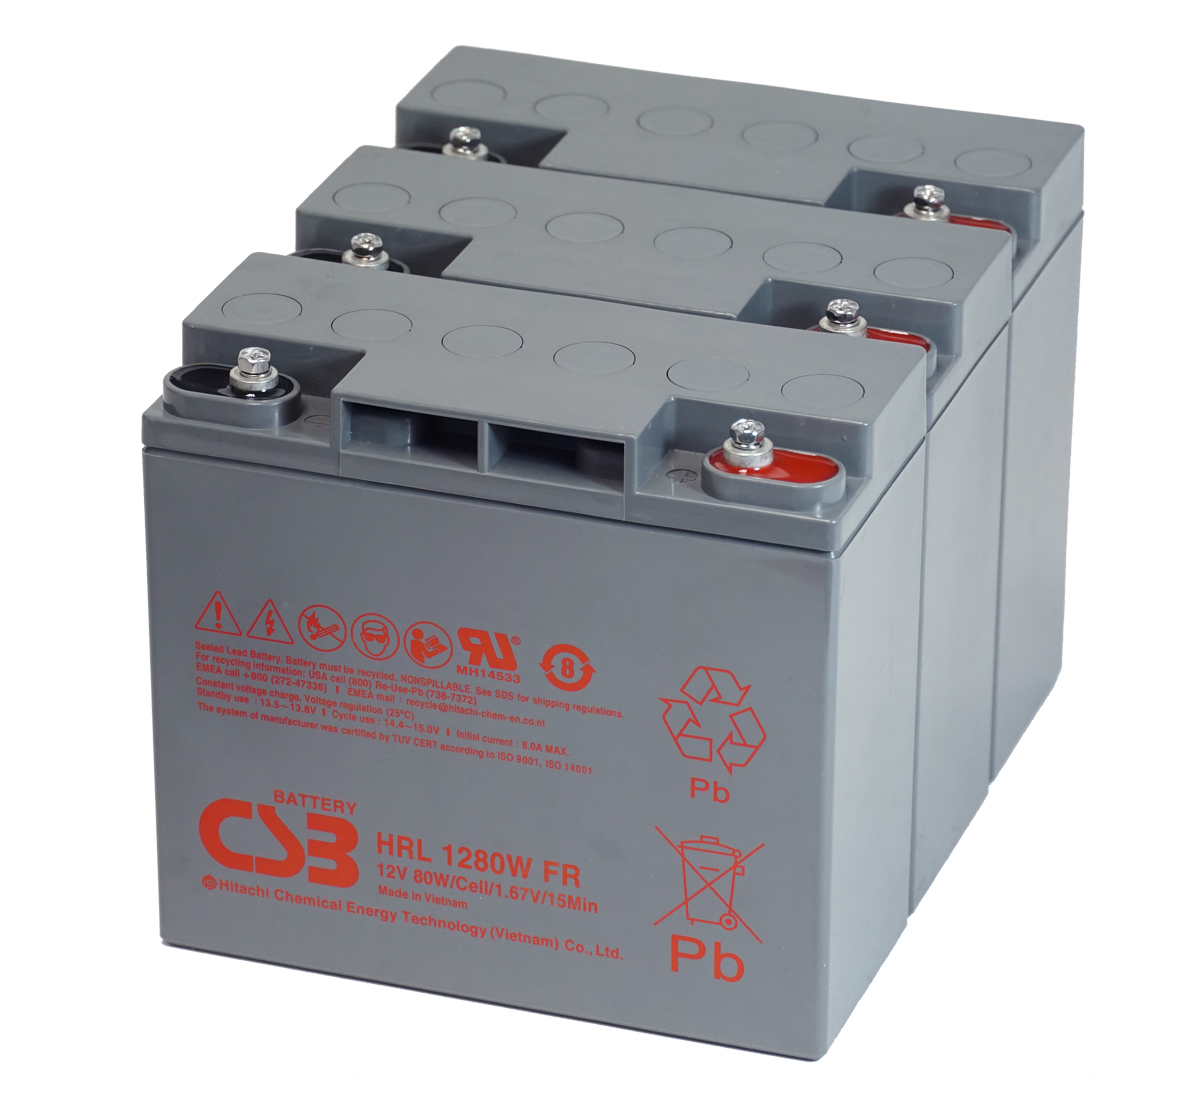 Battery Kit for EMC VNX7500 078-000-050 - HRL1280W